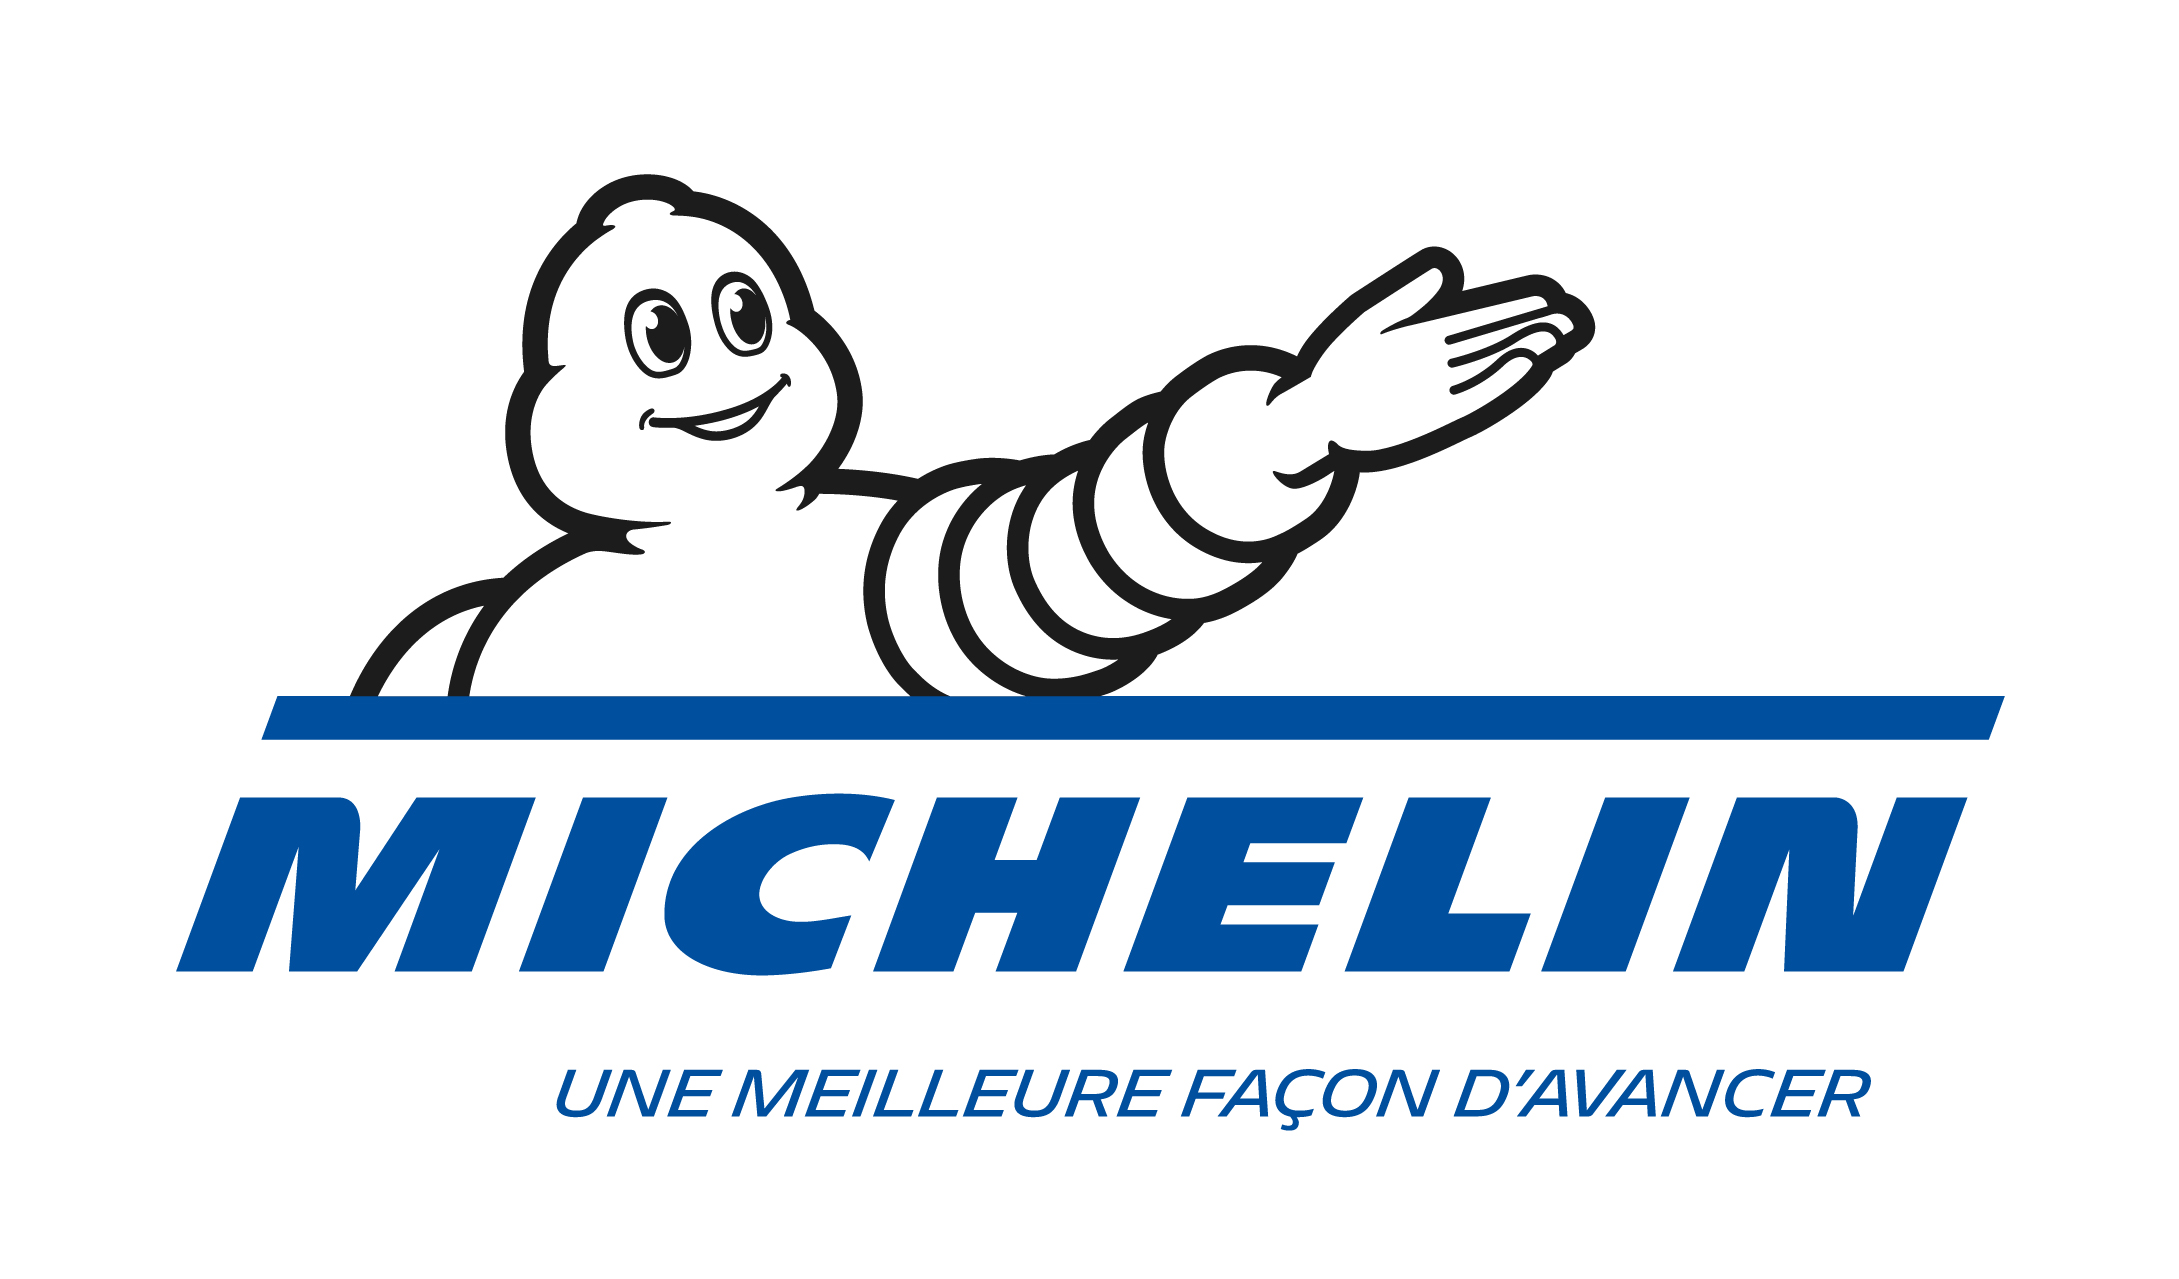 Michelin: Disclosure